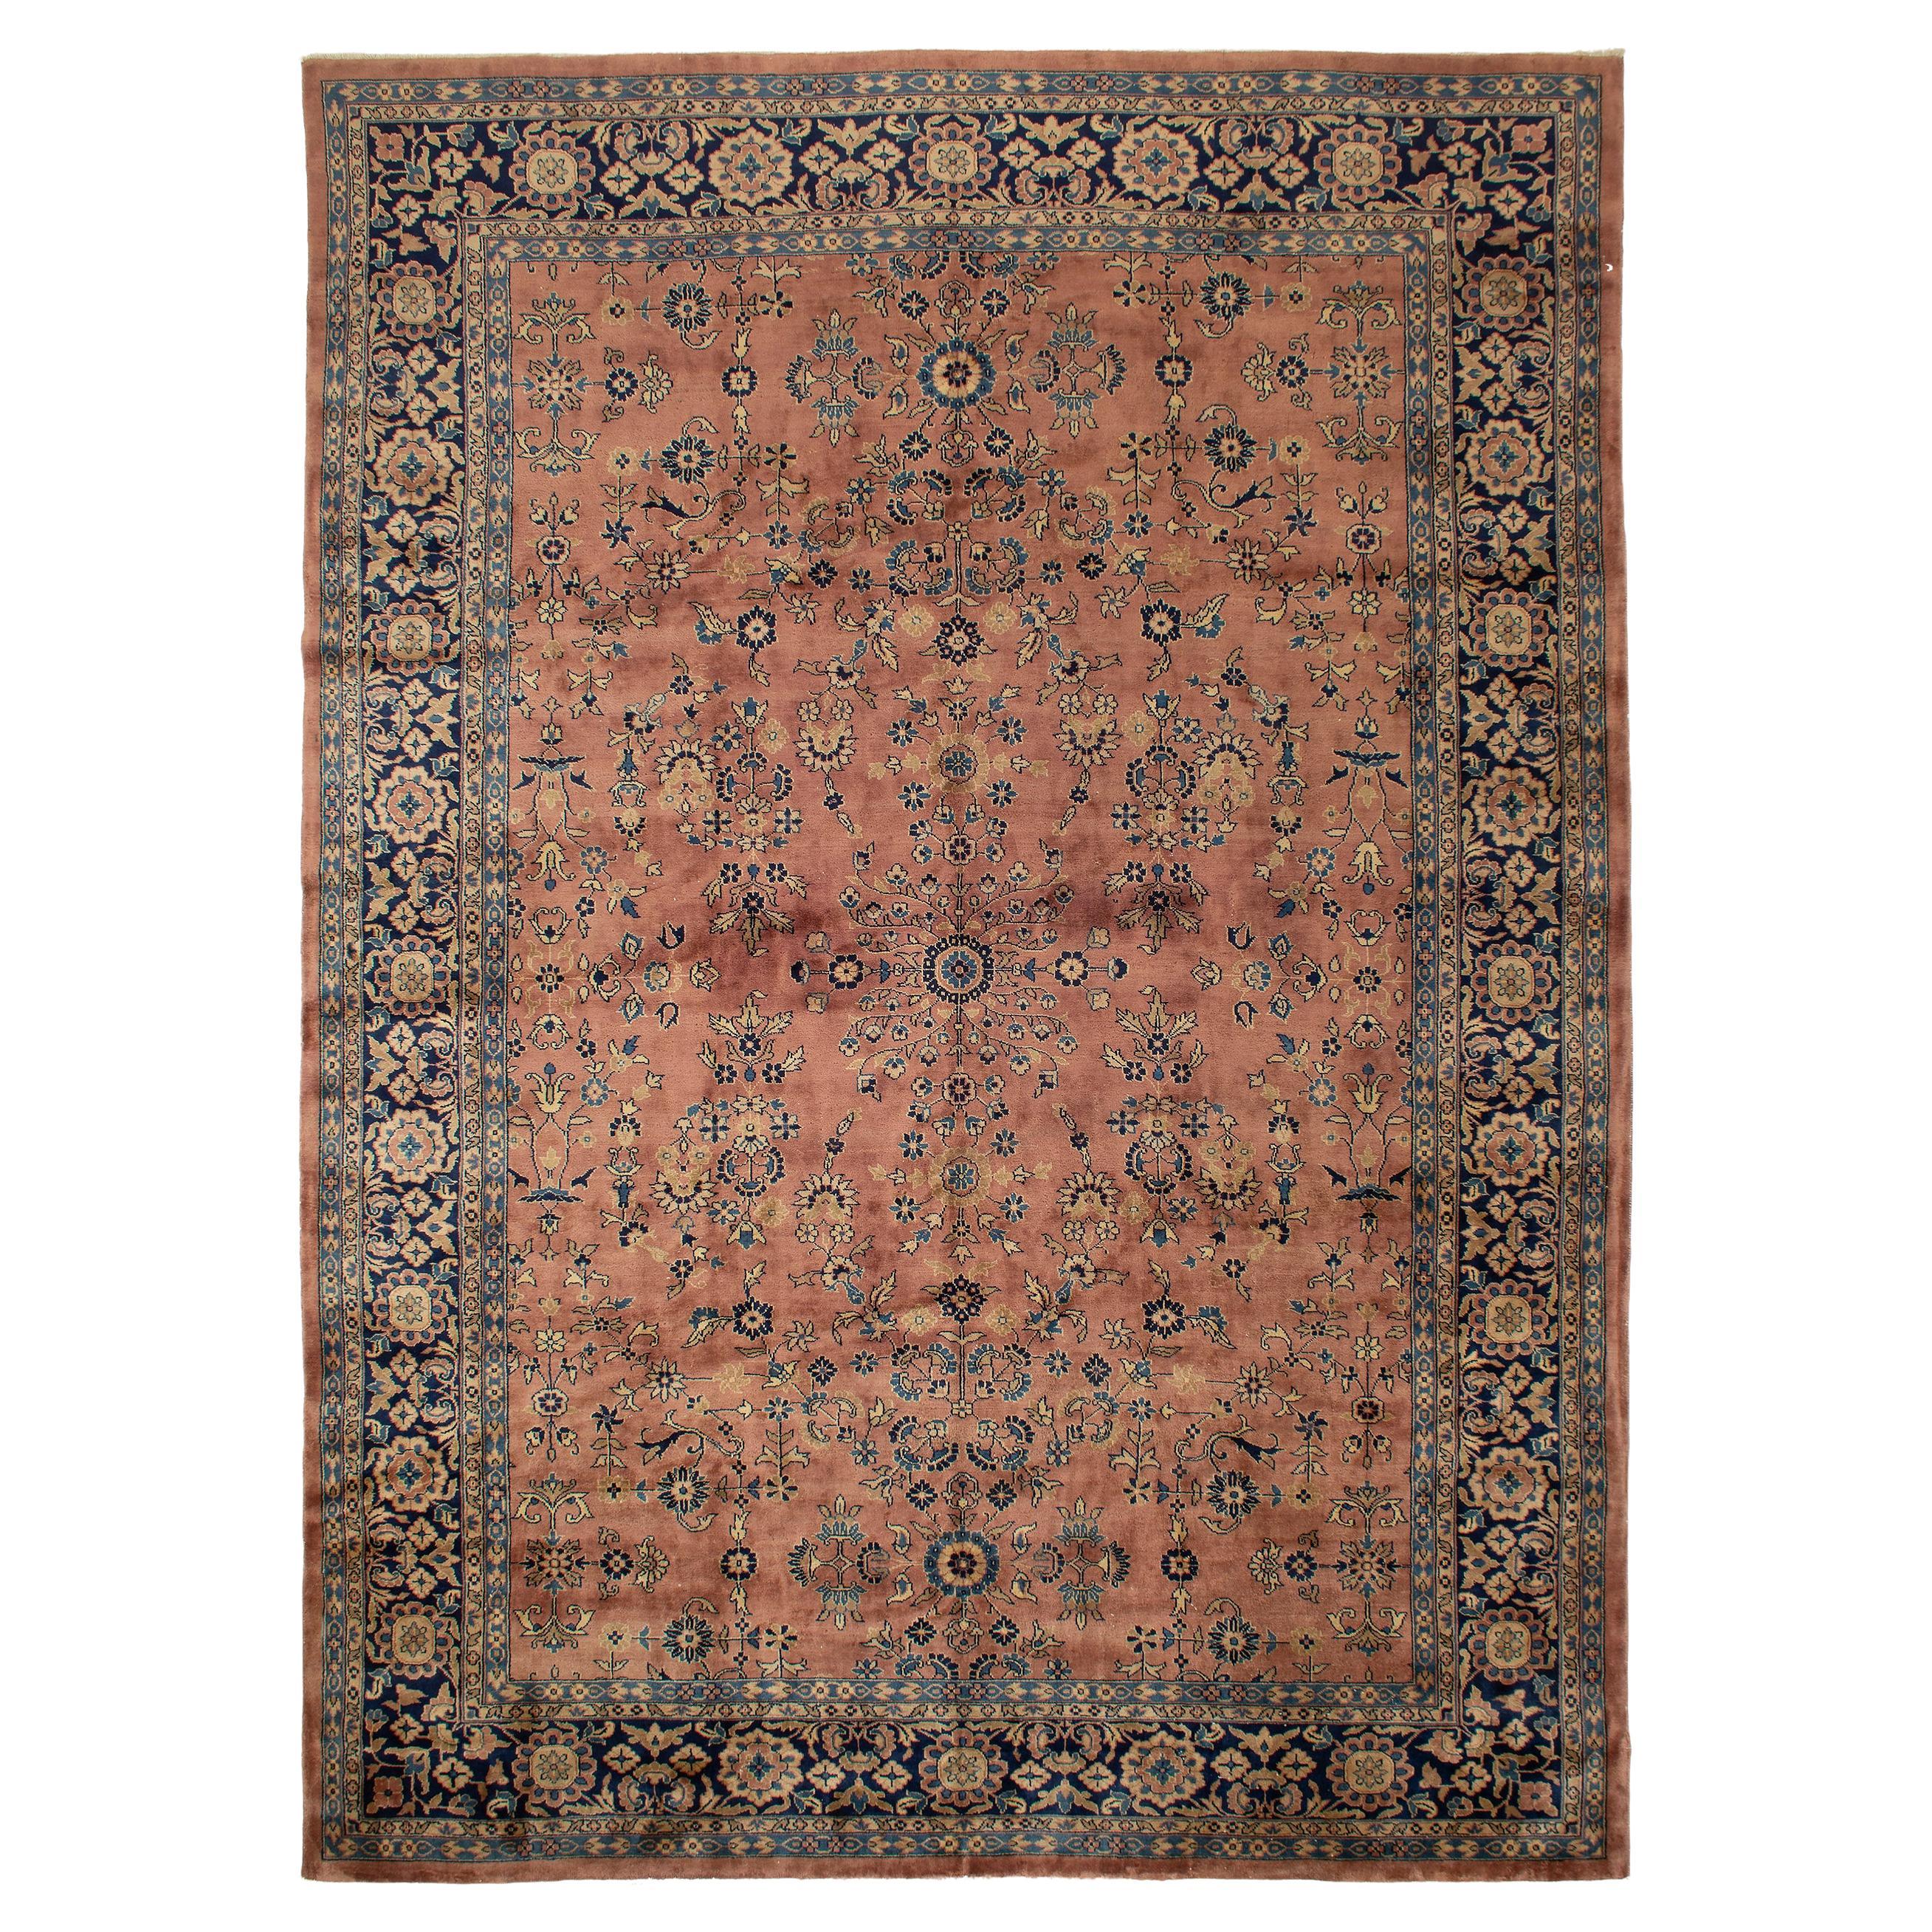 Antique Indian Sarouk Carpet